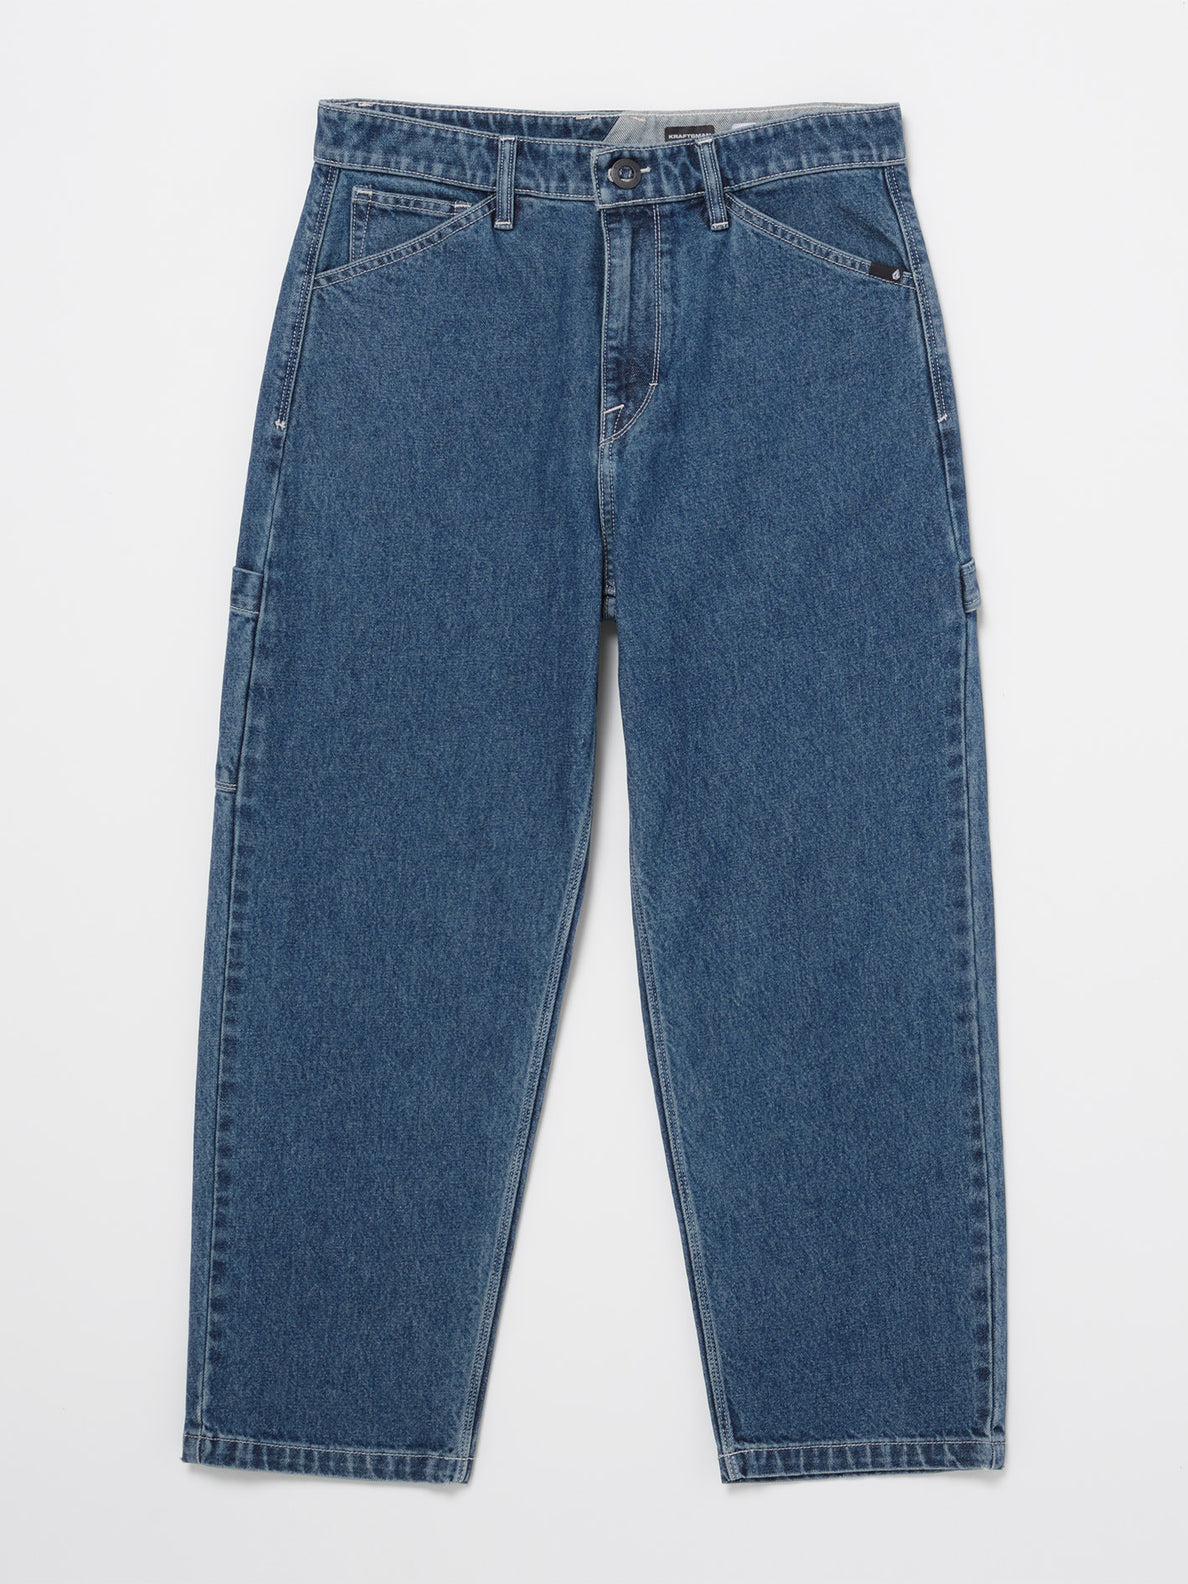 Kraftsman Jeans - Indigo Ridge Wash